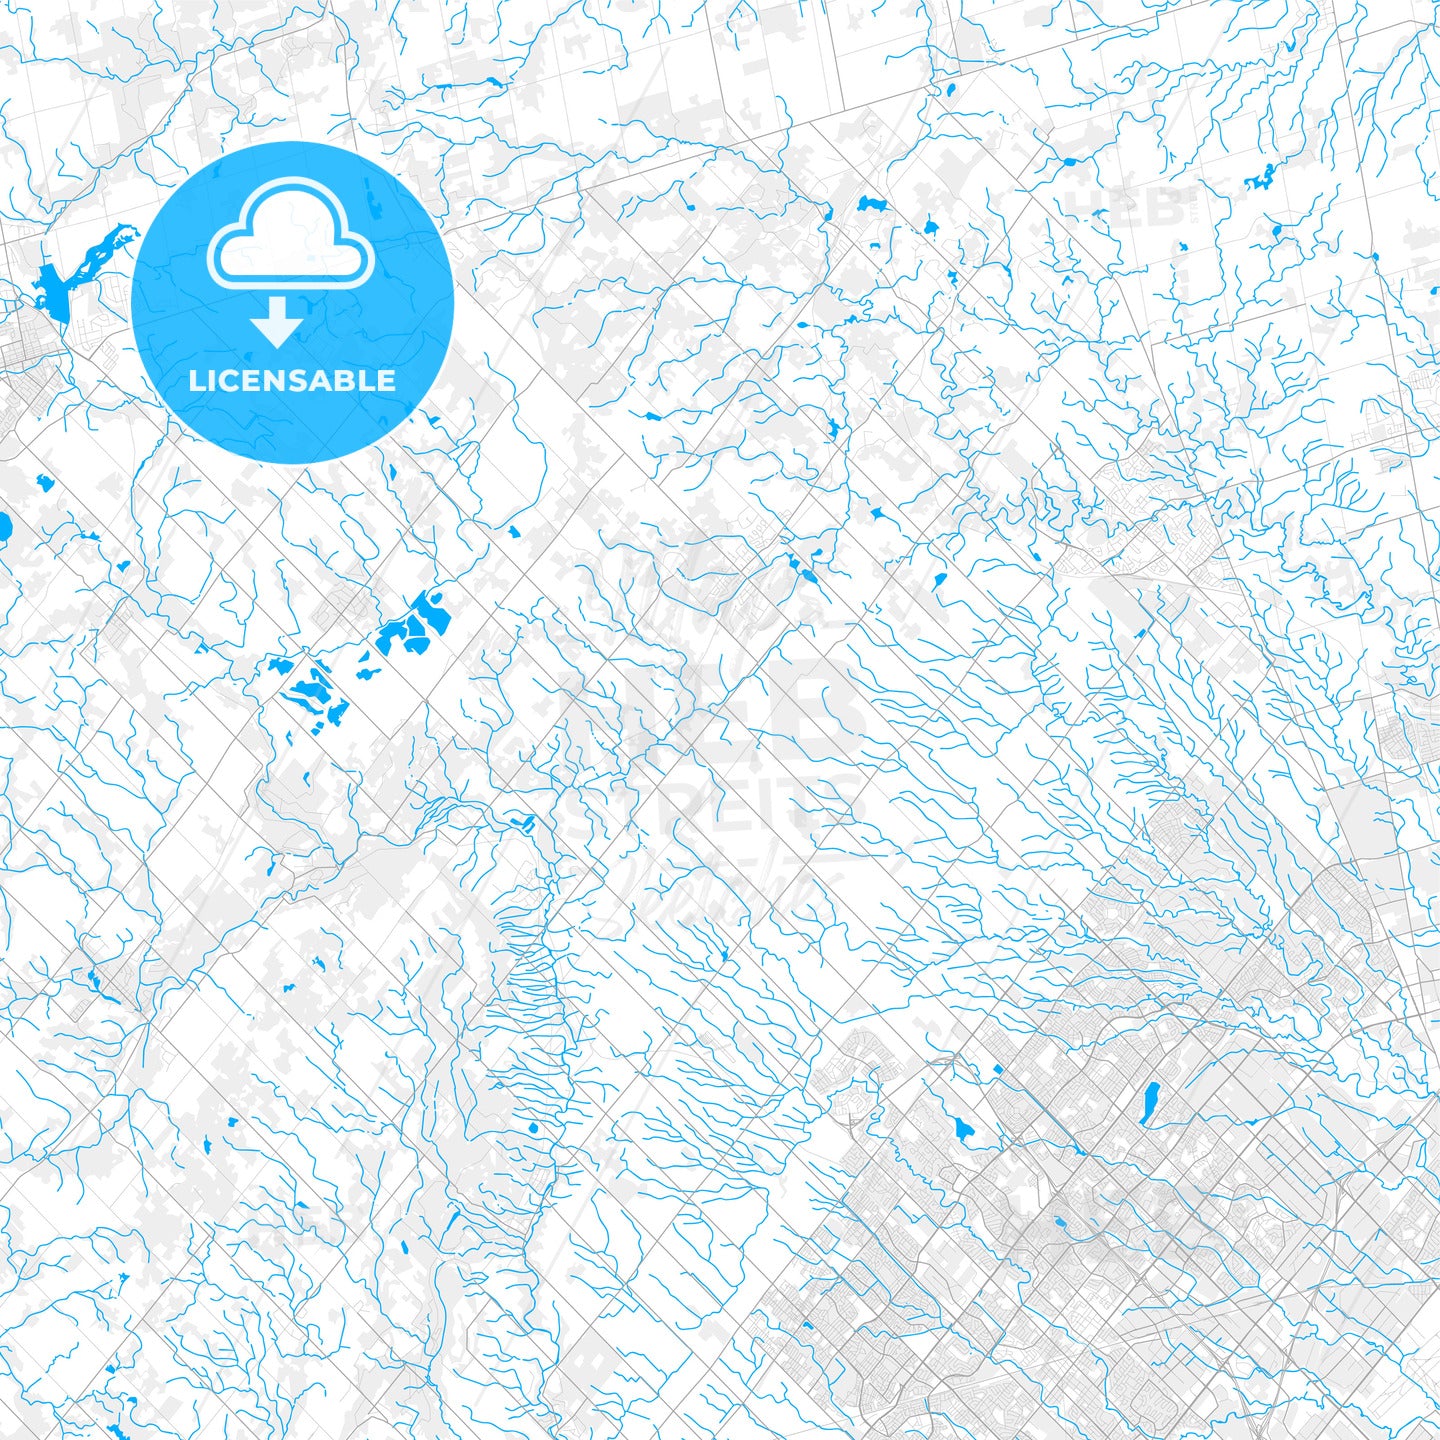 Rich detailed vector map of Caledon, Ontario, Canada